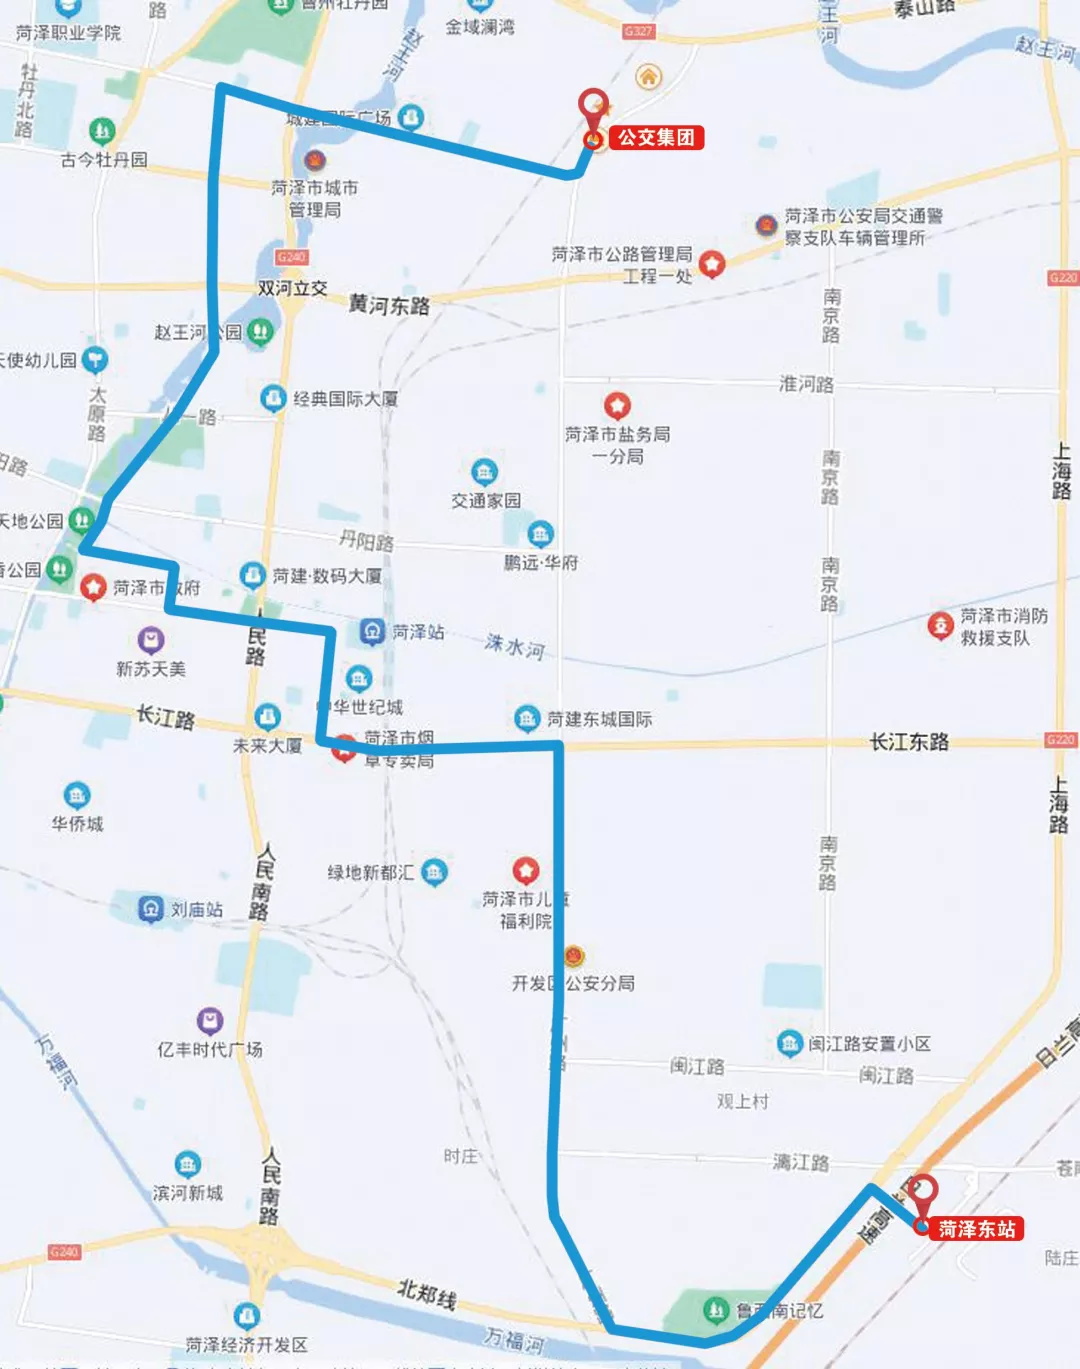 菏泽火车站实景地图图片